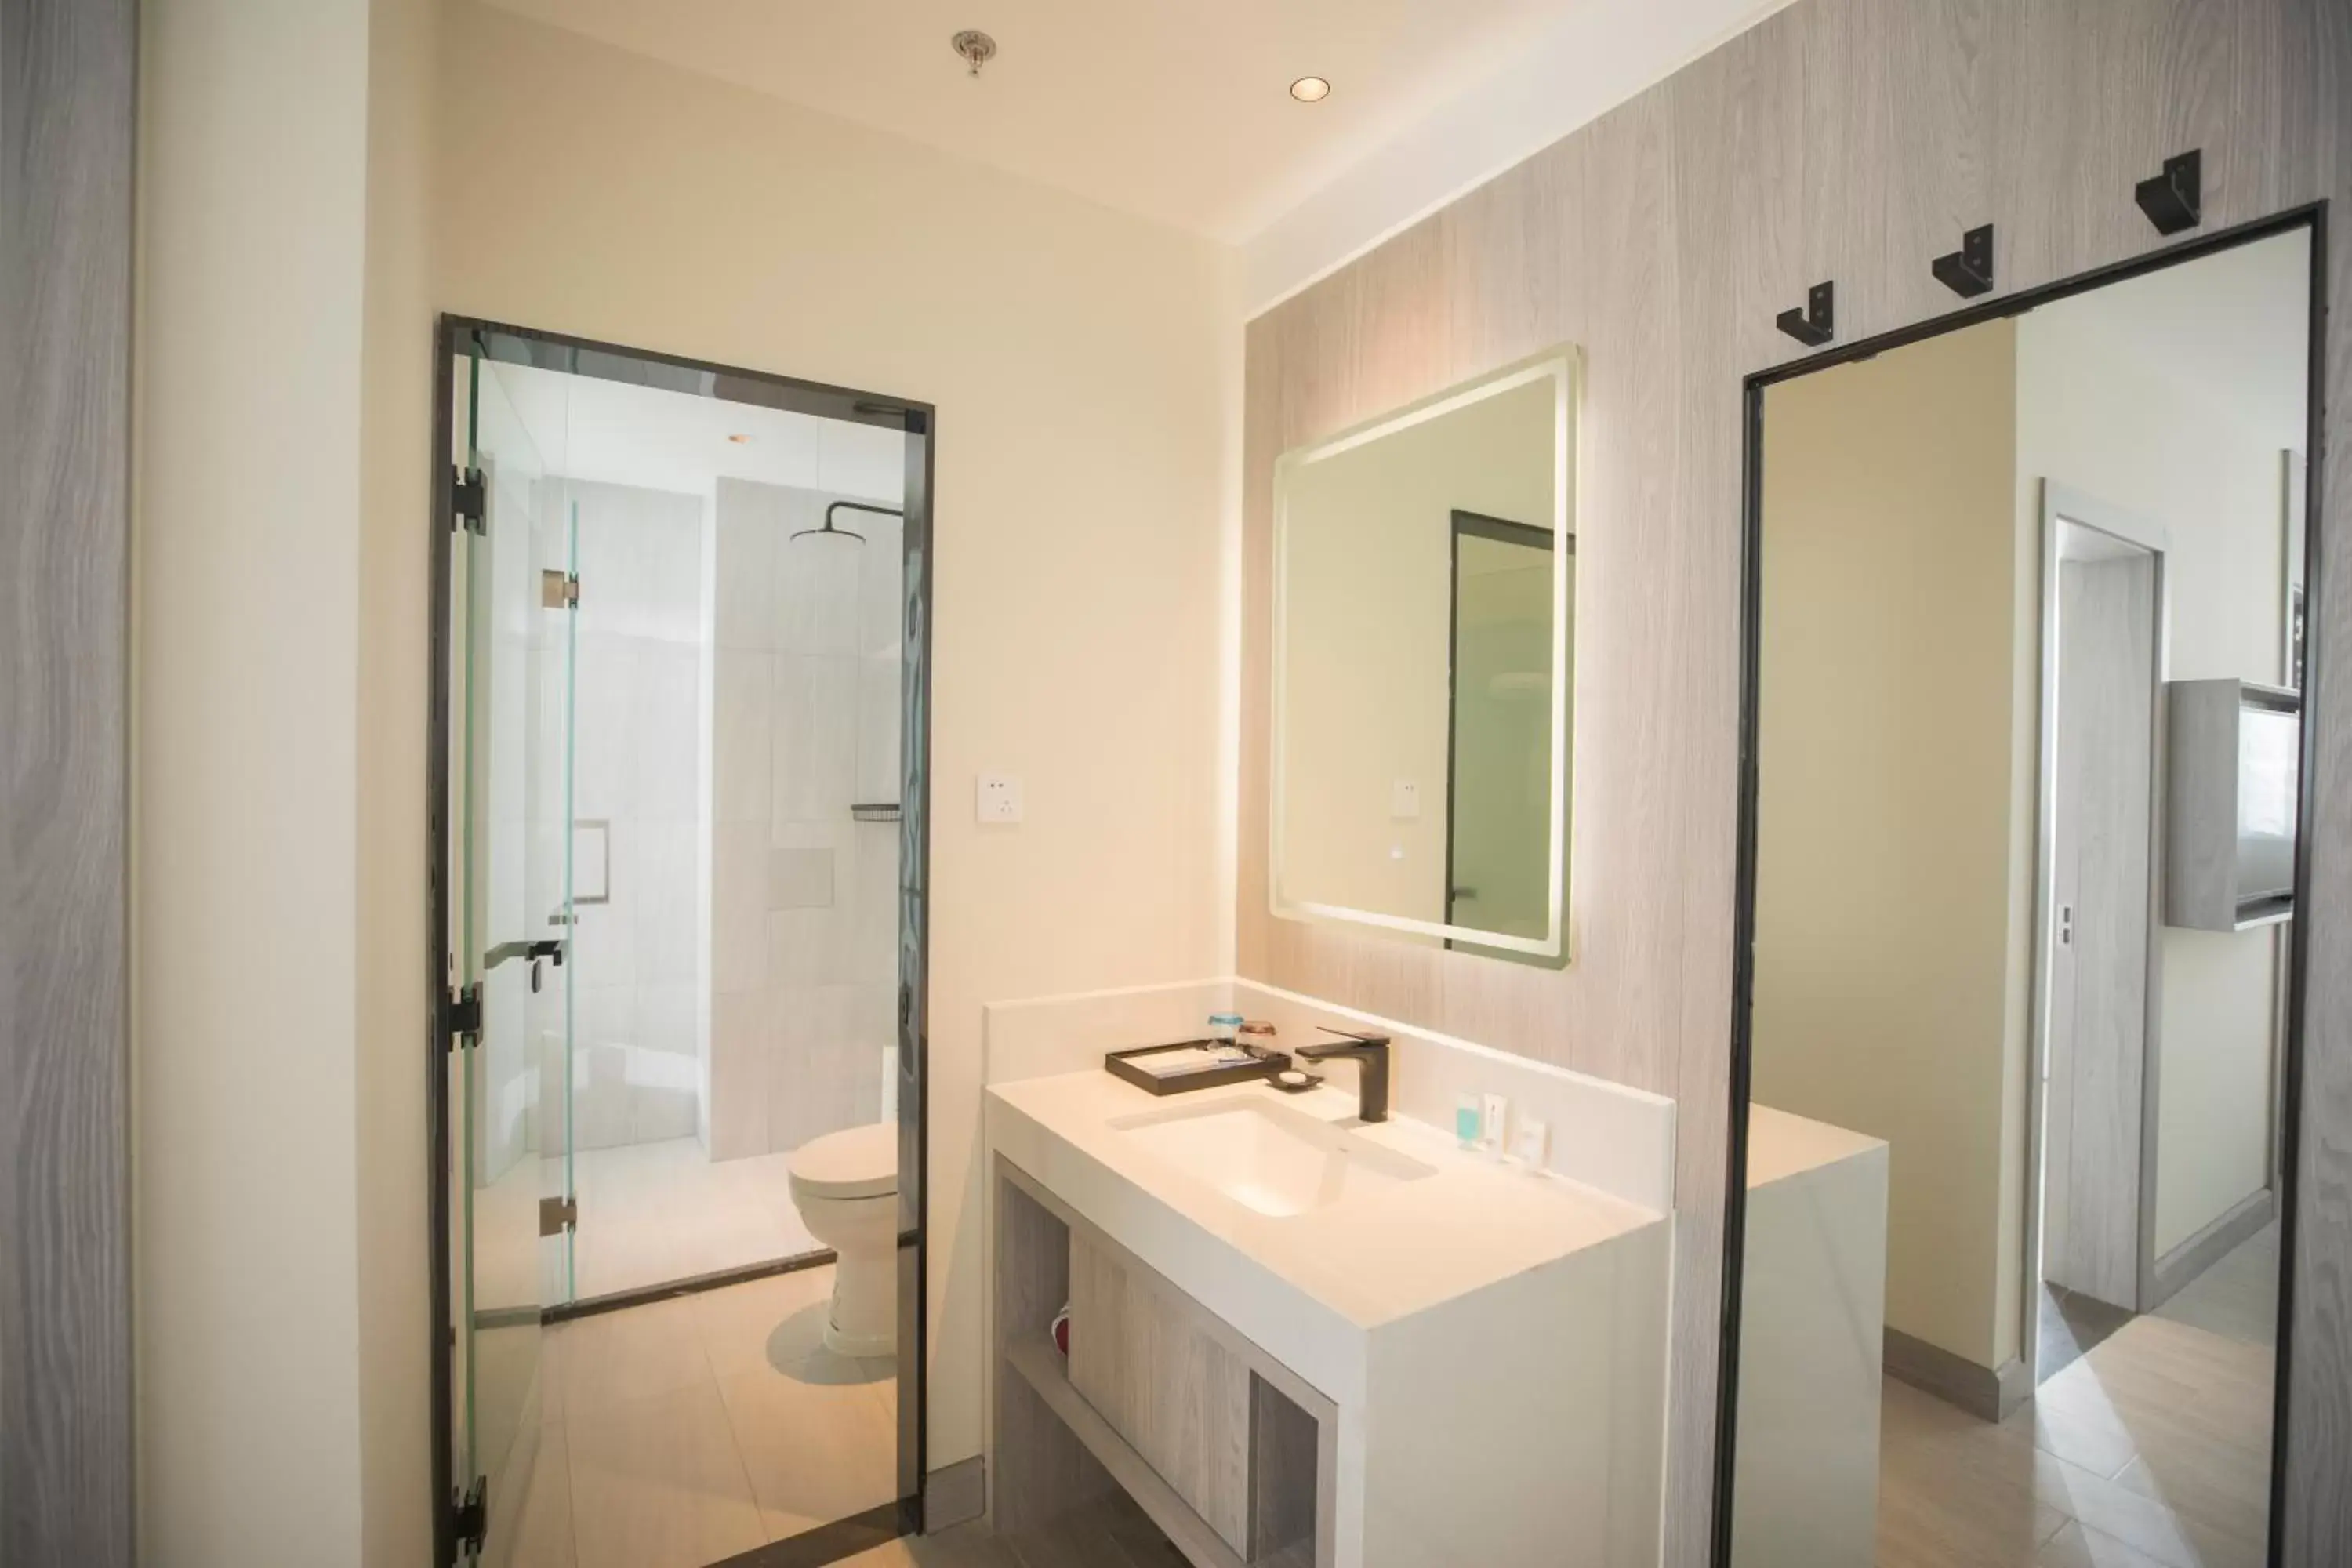 Area and facilities, Bathroom in Beijing Saga Hotel